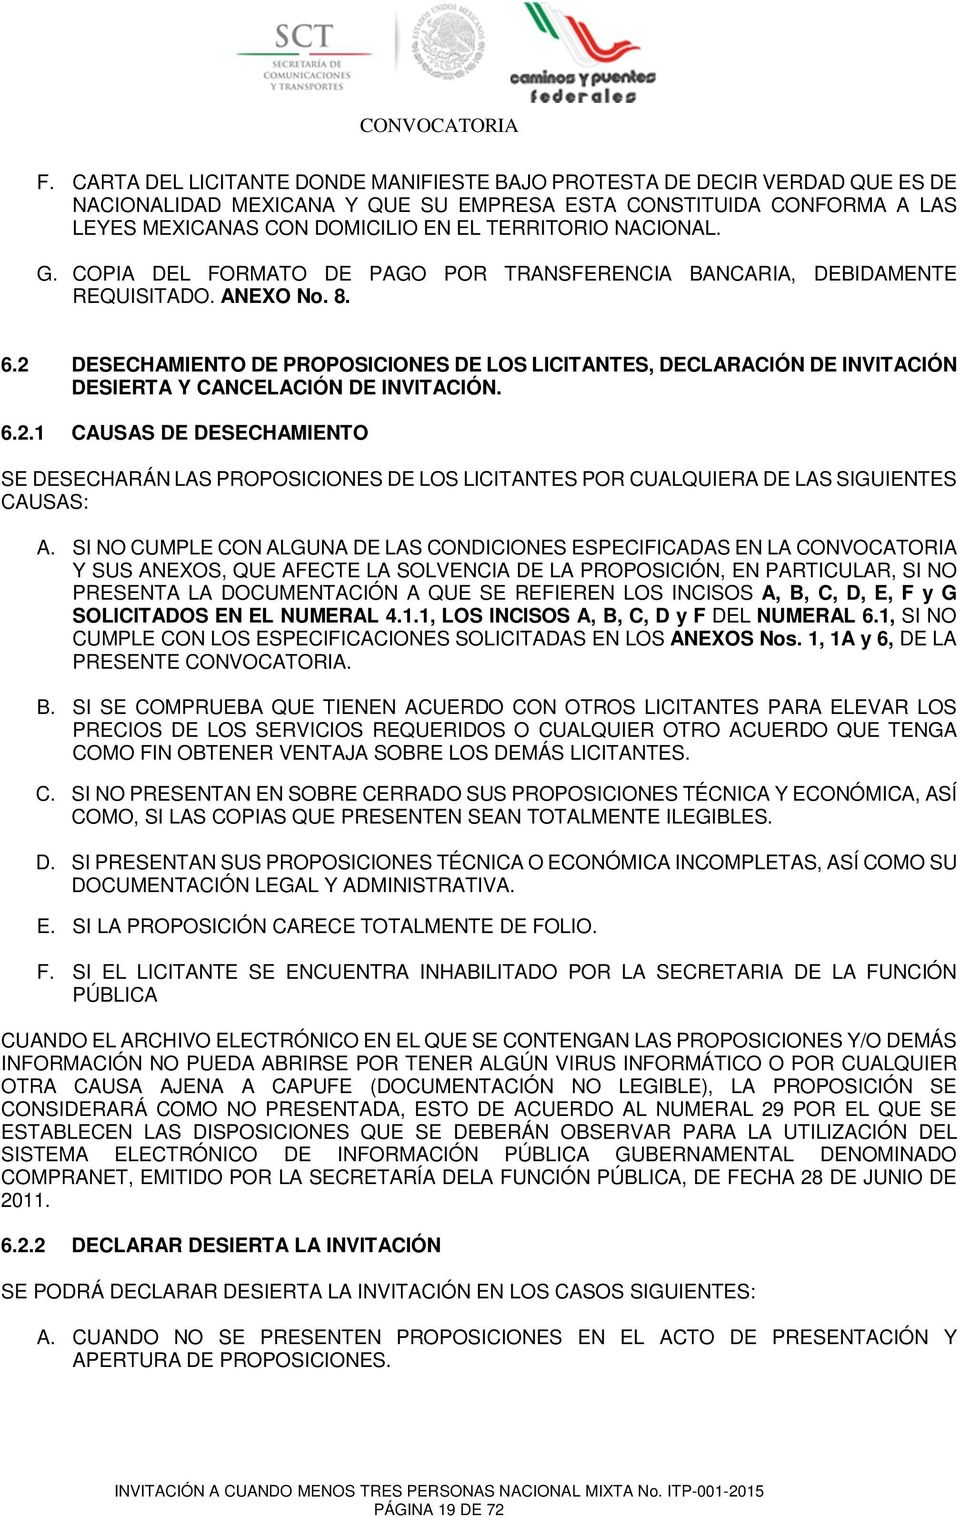 2 DESECHAMIENTO DE PROPOSICIONES DE LOS LICITANTES, DECLARACIÓN DE INVITACIÓN DESIERTA Y CANCELACIÓN DE INVITACIÓN. 6.2.1 CAUSAS DE DESECHAMIENTO SE DESECHARÁN LAS PROPOSICIONES DE LOS LICITANTES POR CUALQUIERA DE LAS SIGUIENTES CAUSAS: A.